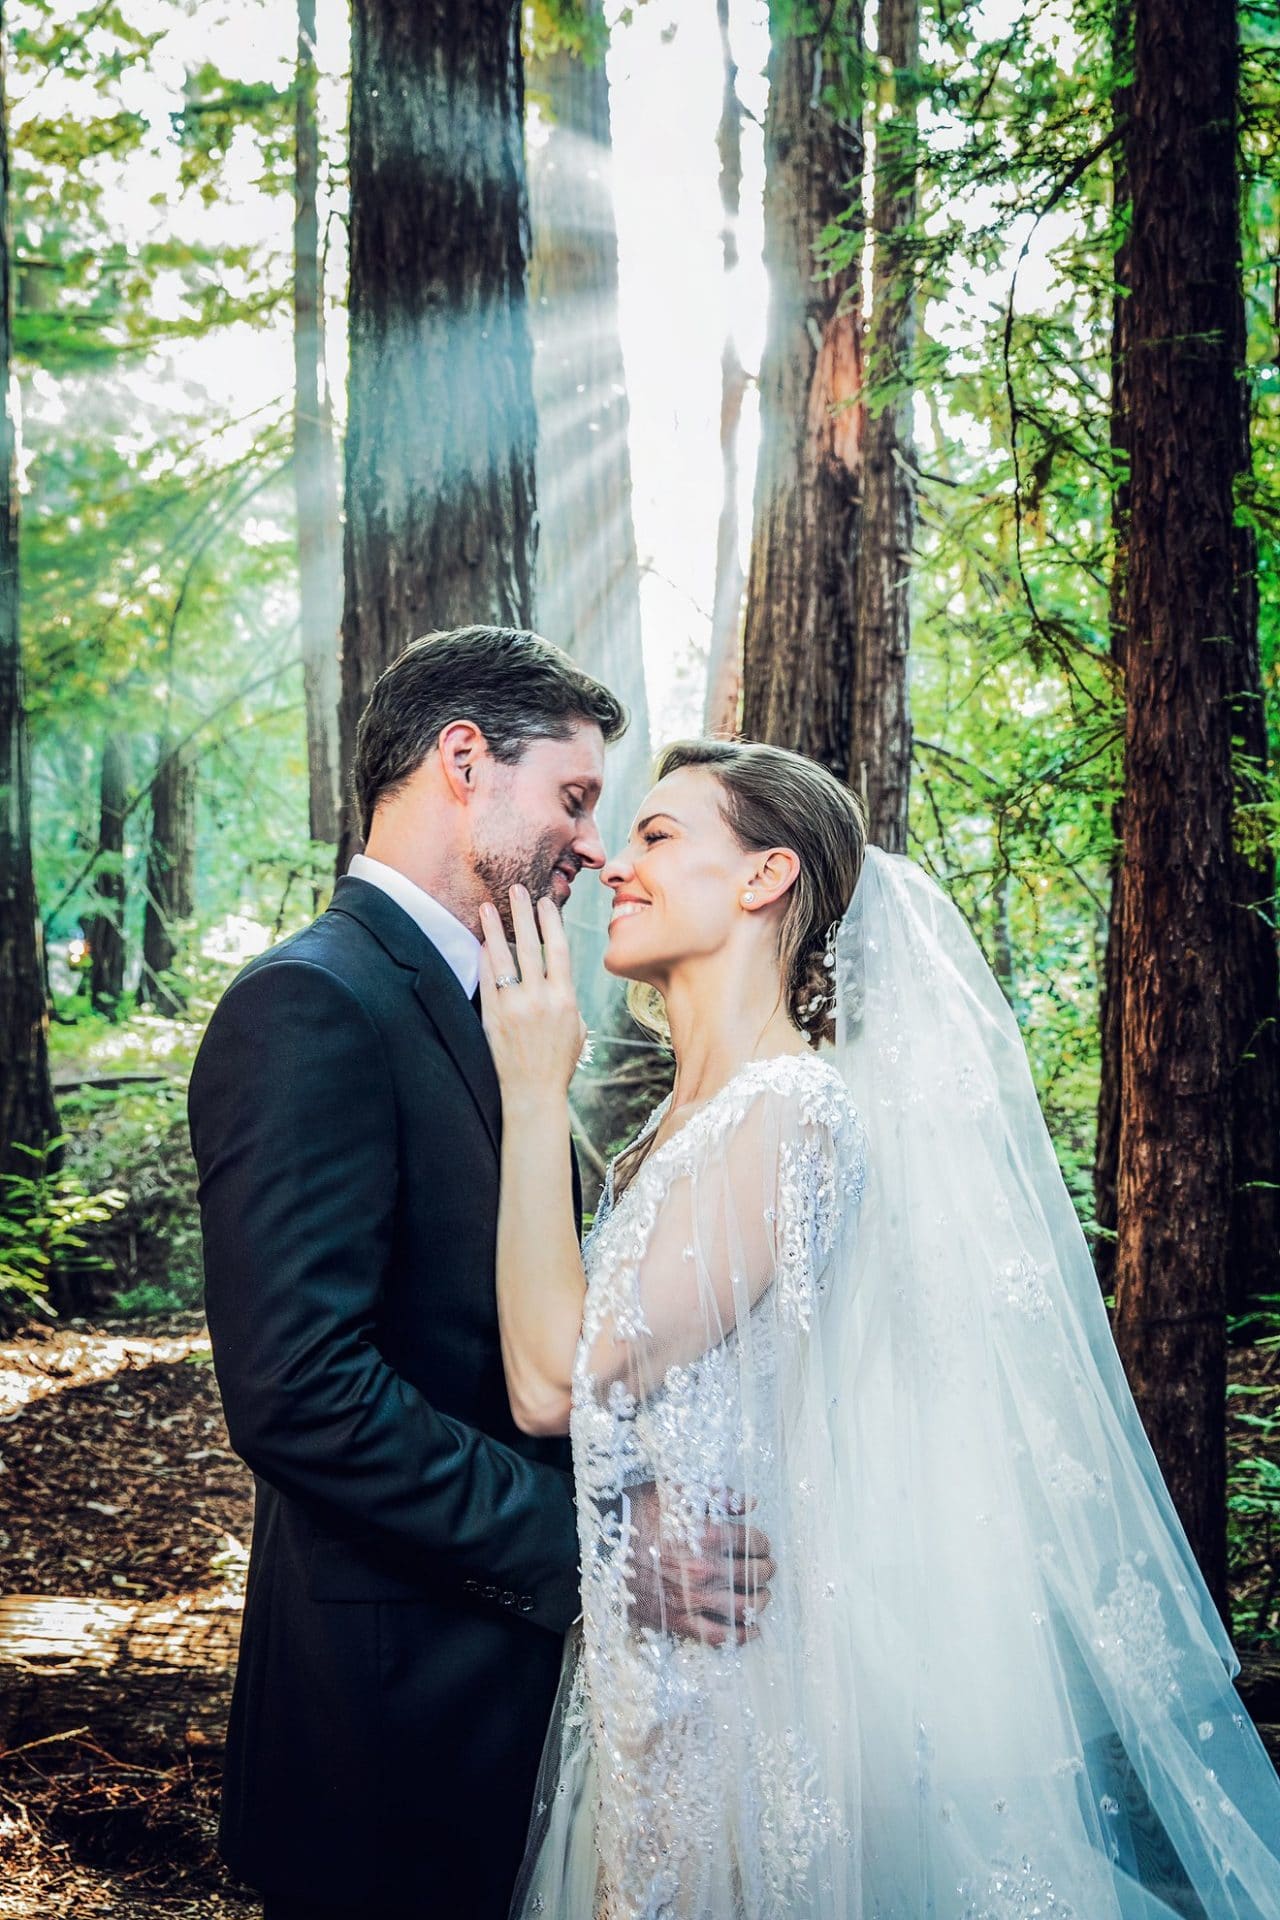 Hilary Swank Secretly Marries Boyfriend Philip Schneider in the Redwoods